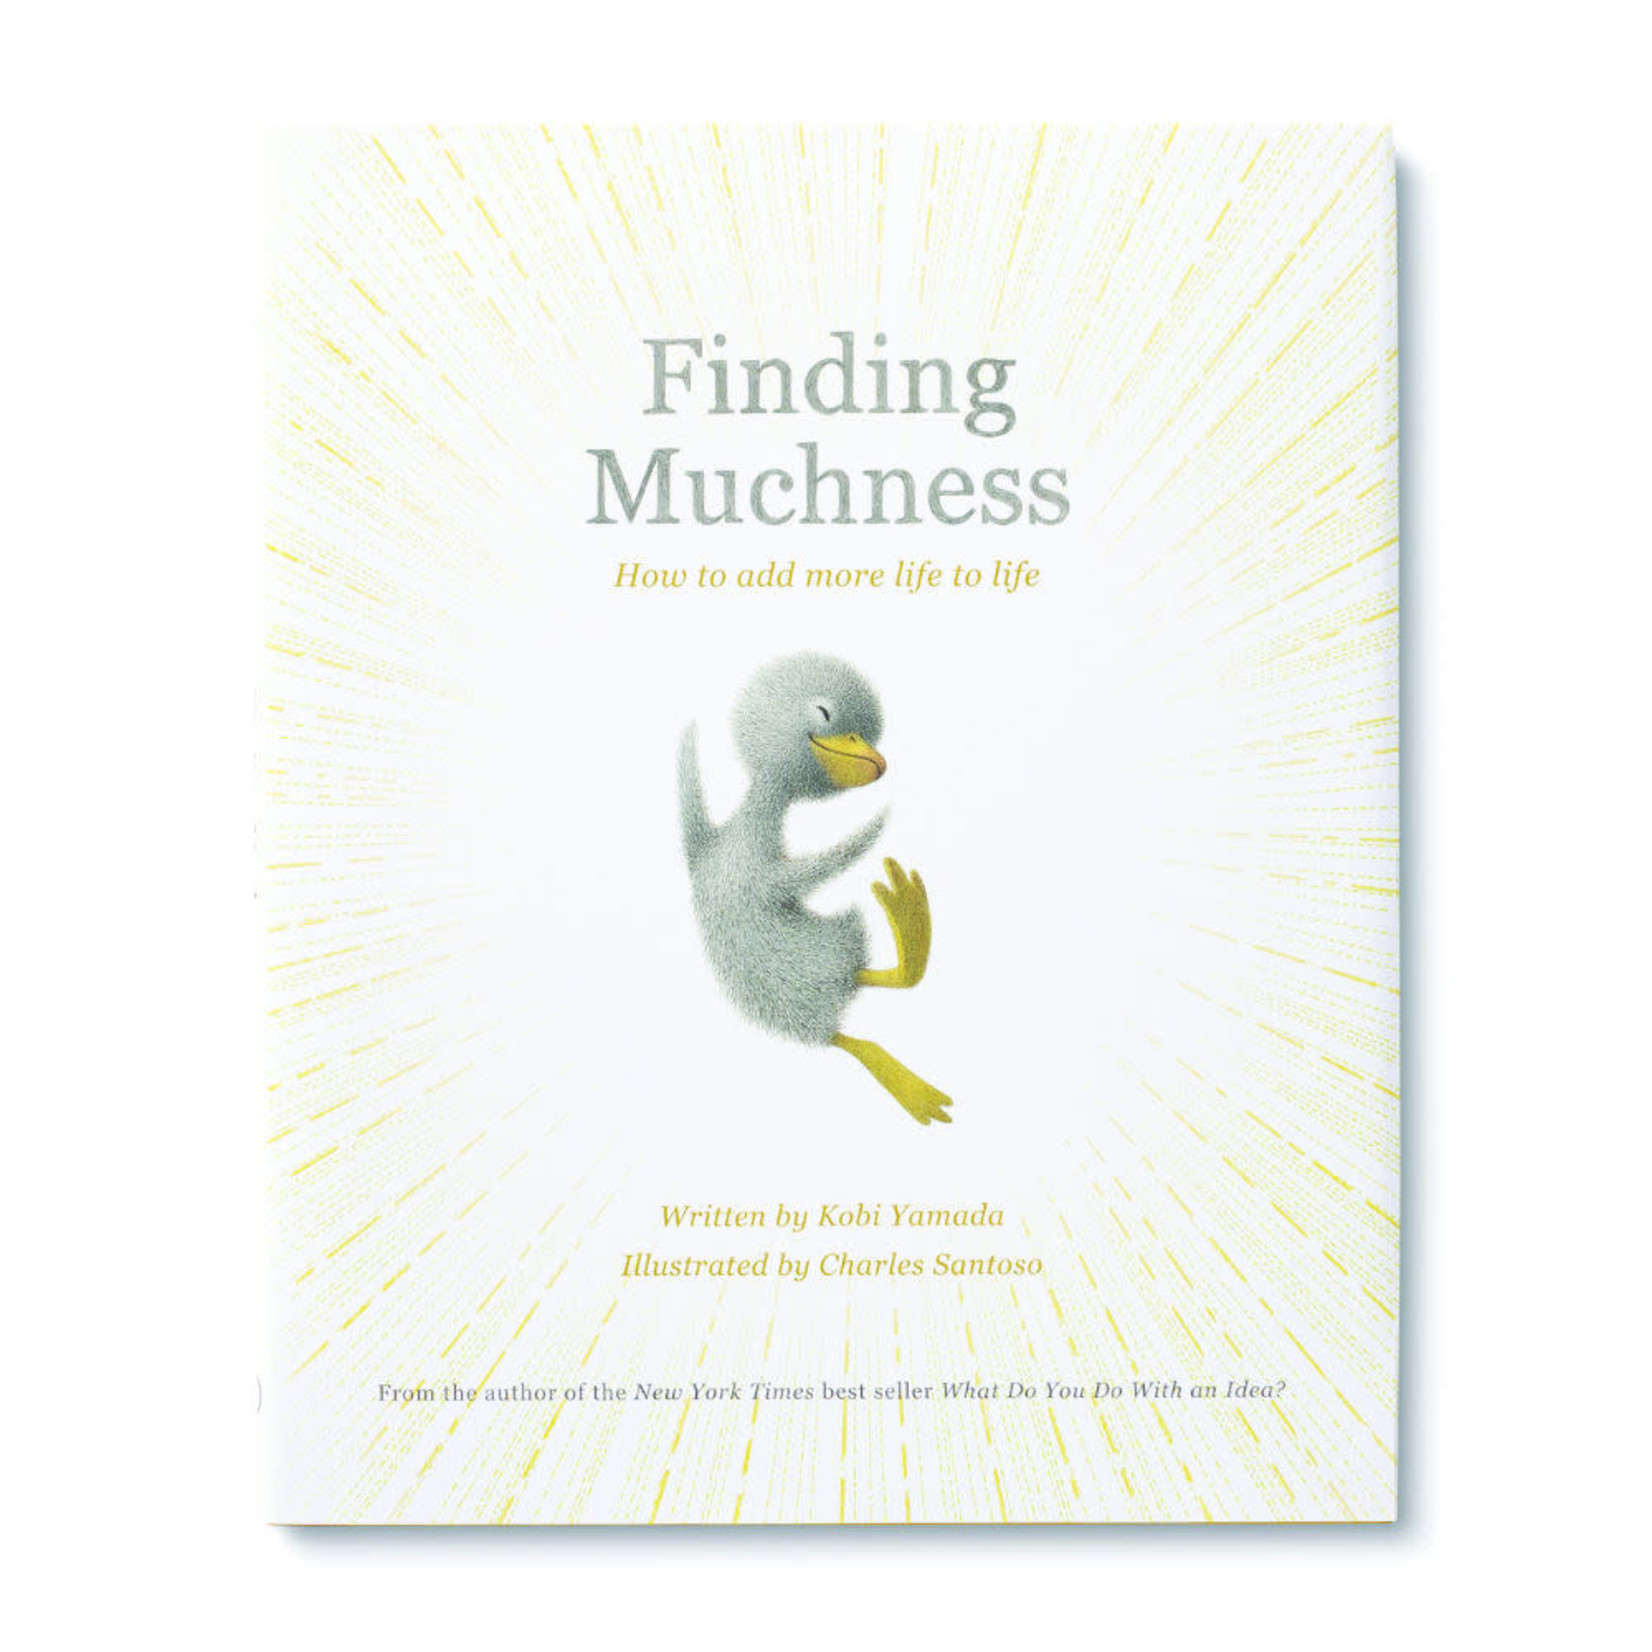 Compendium Finding Muchness